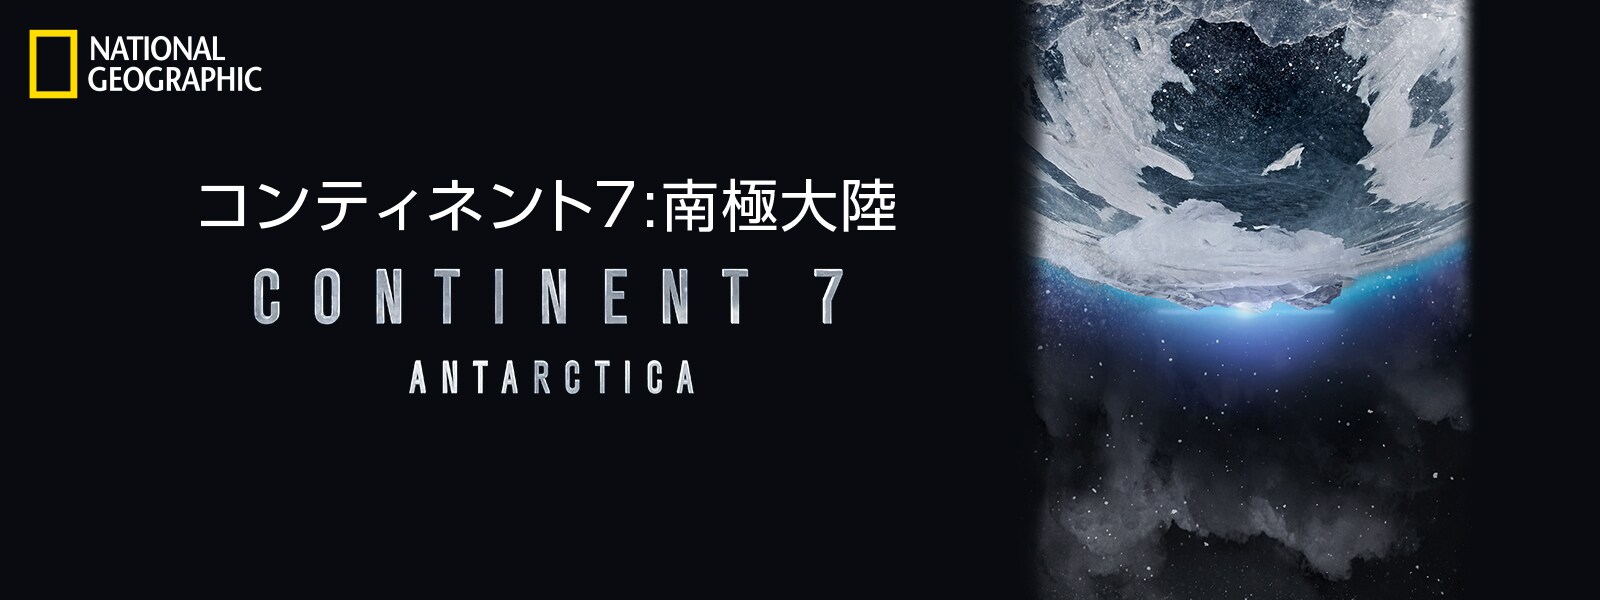 コンティネント7:南極大陸｜Continent 7: Antarctica Hero Object 